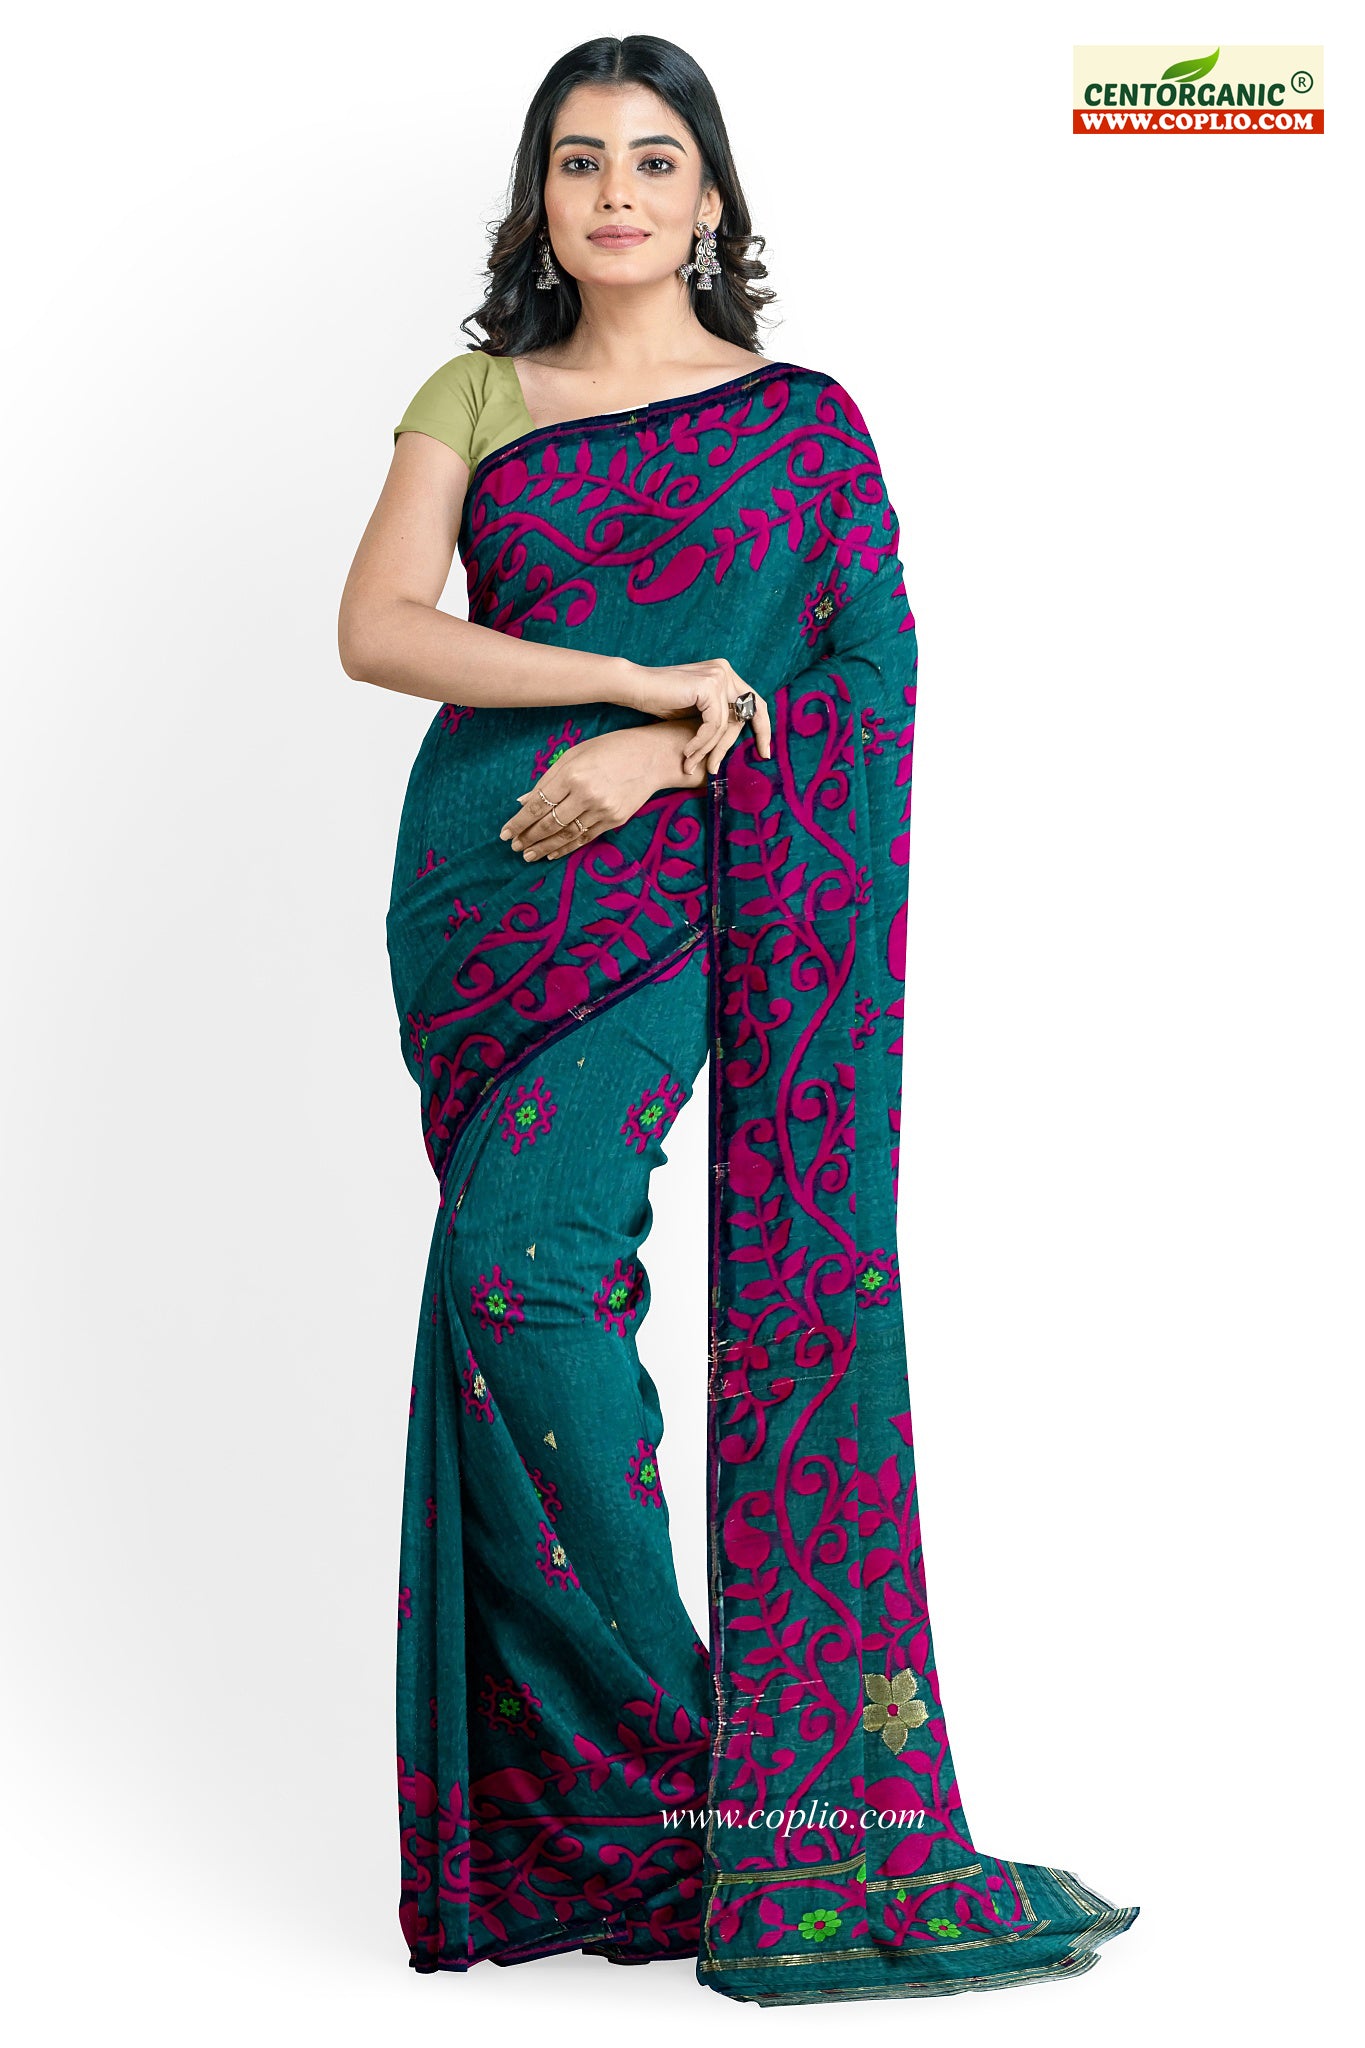 Centorganic Dhakai Soft Jamdani Bengal saree for women, All Over Weaving Design Lota Pata Phool Jamdani, Without Blouse Piece